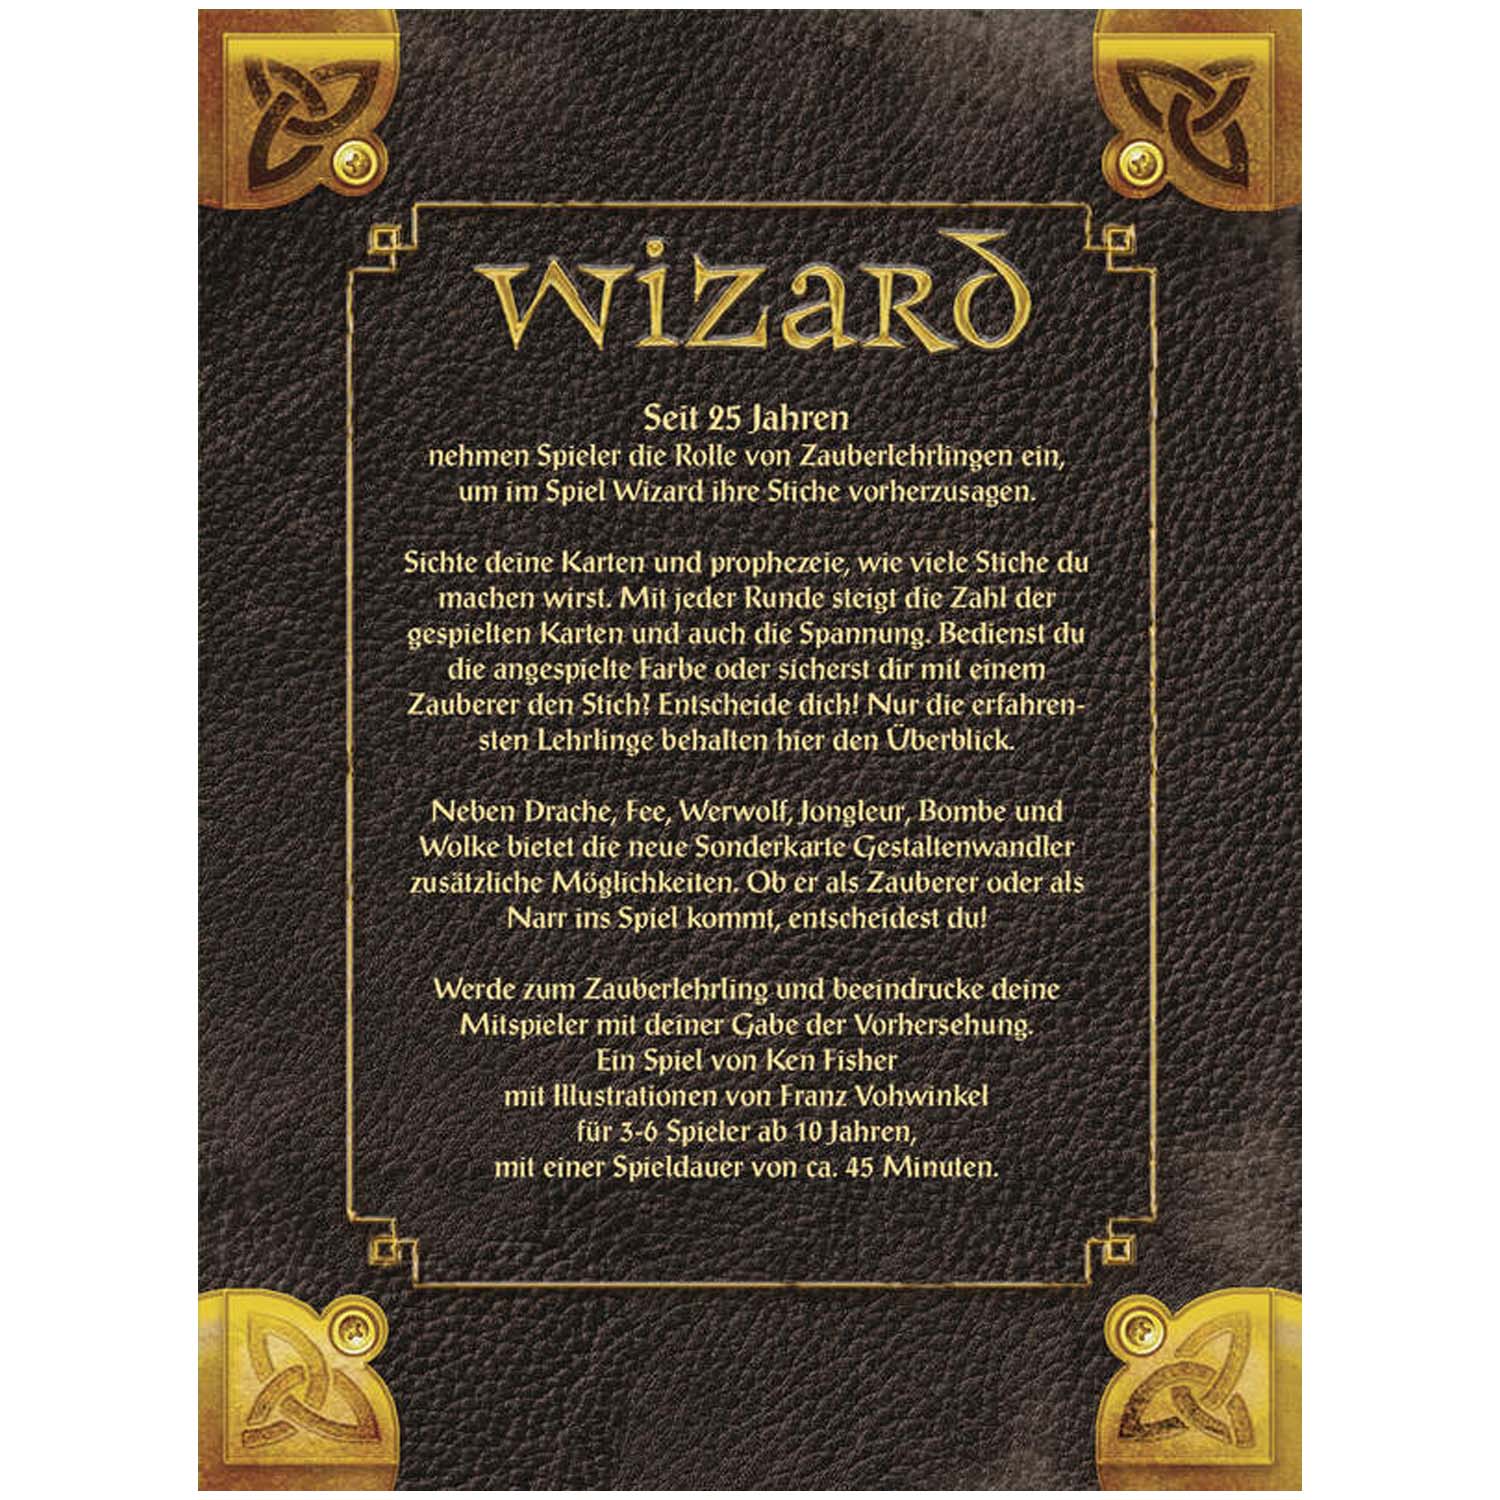 Wizard 25 Jahre-Edition hinten